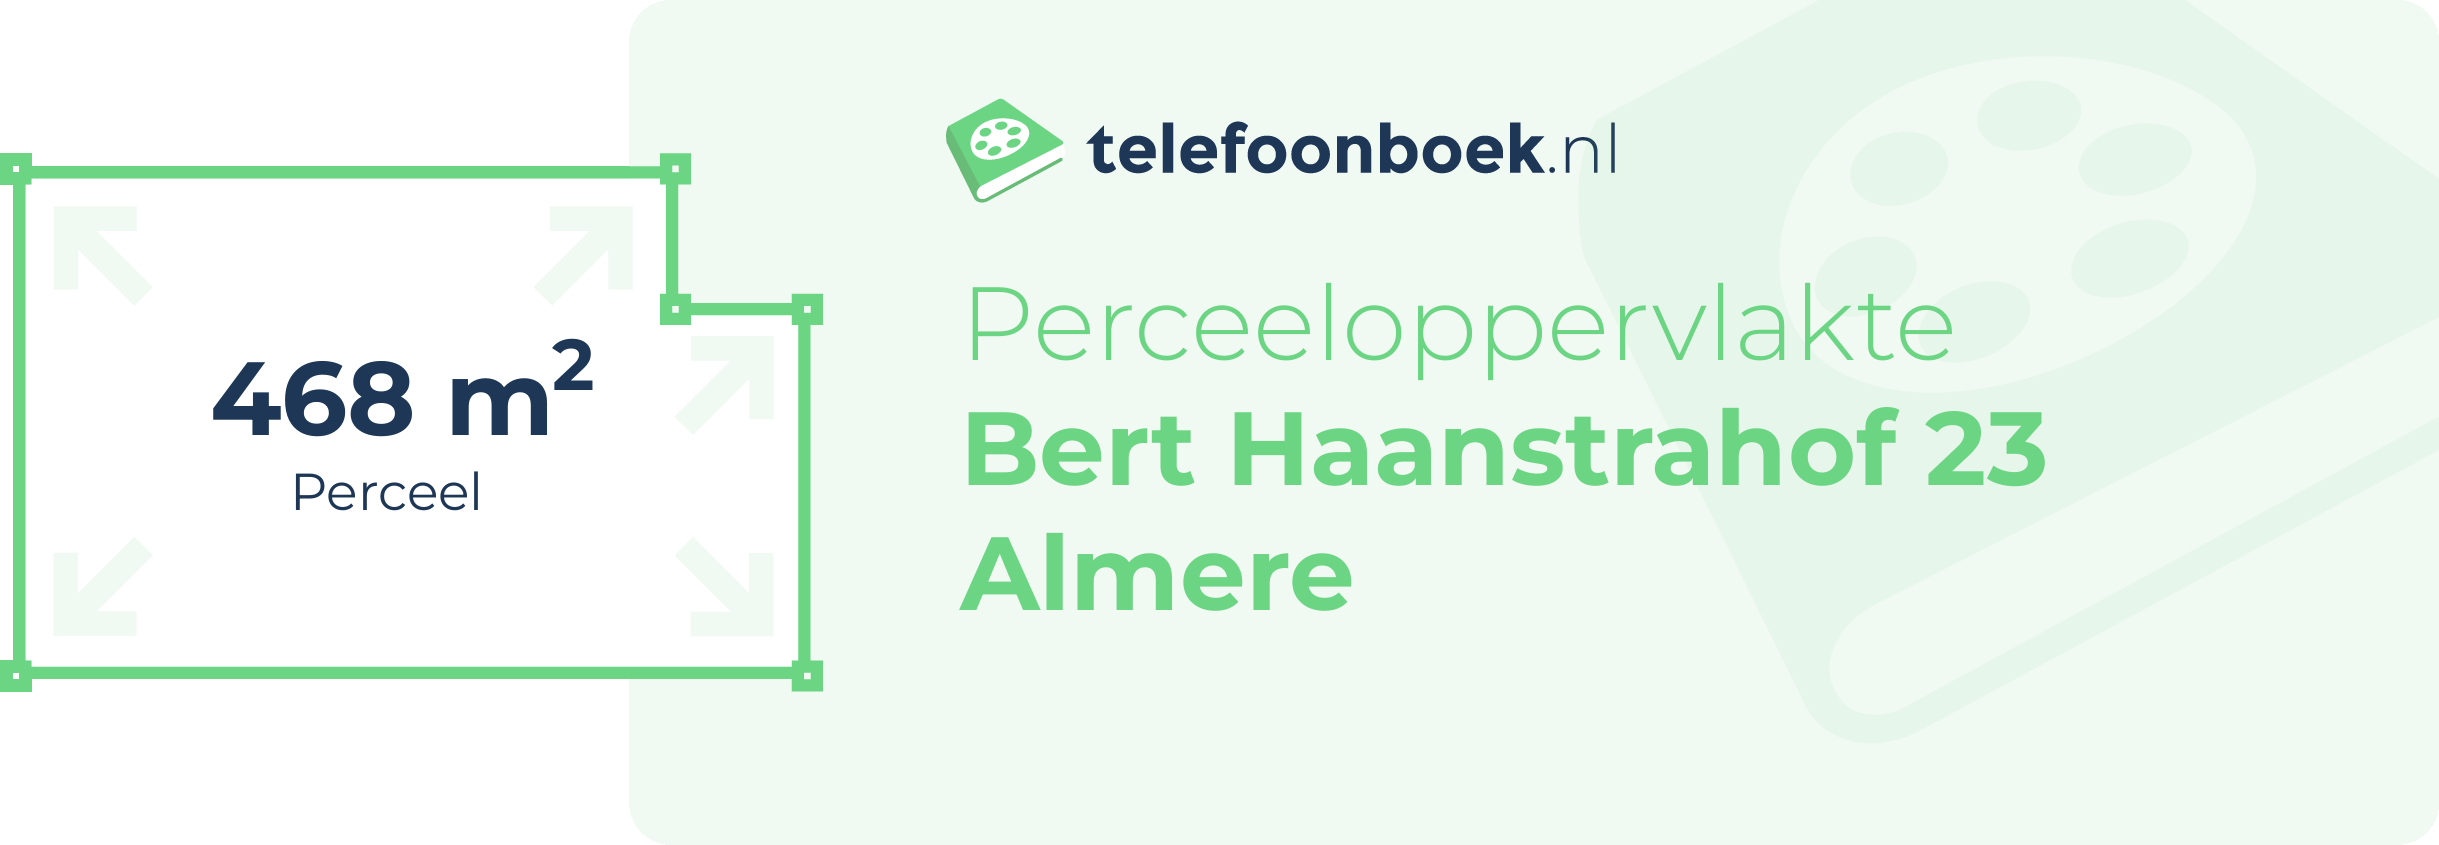 Perceeloppervlakte Bert Haanstrahof 23 Almere